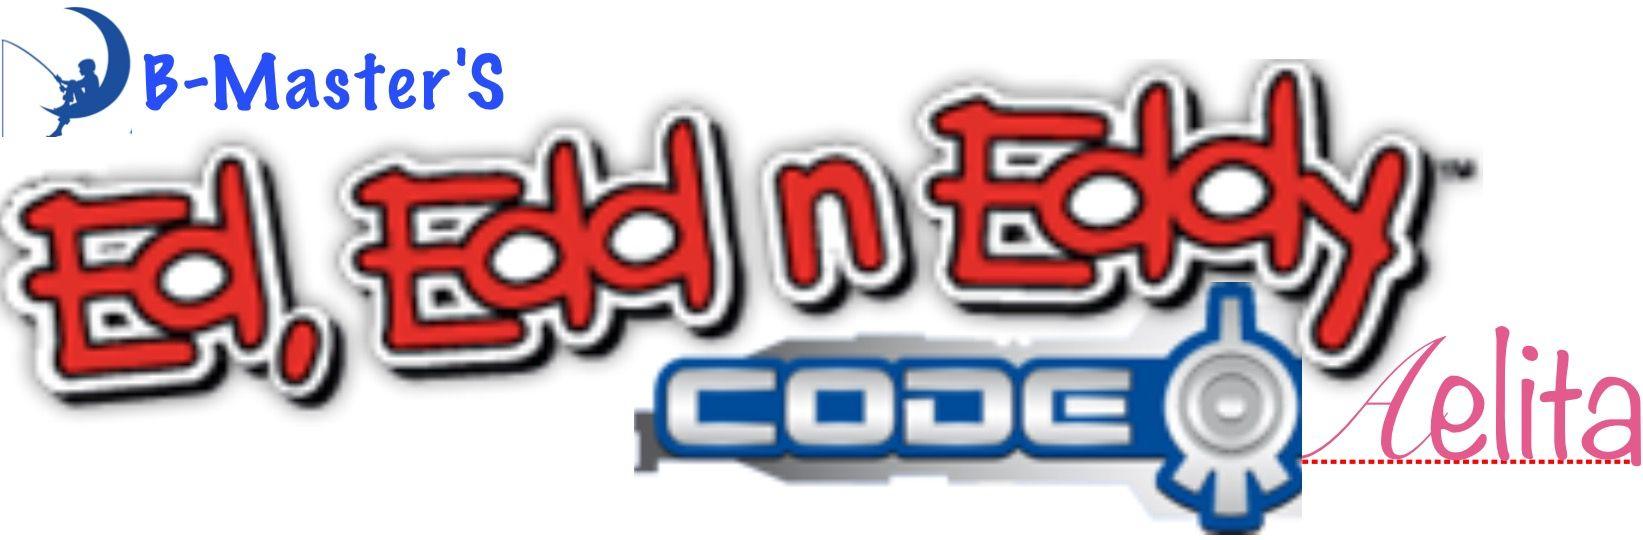 Ed Edd N Eddy Logo - Code Aelita. Ed, Edd n Eddy Fanon